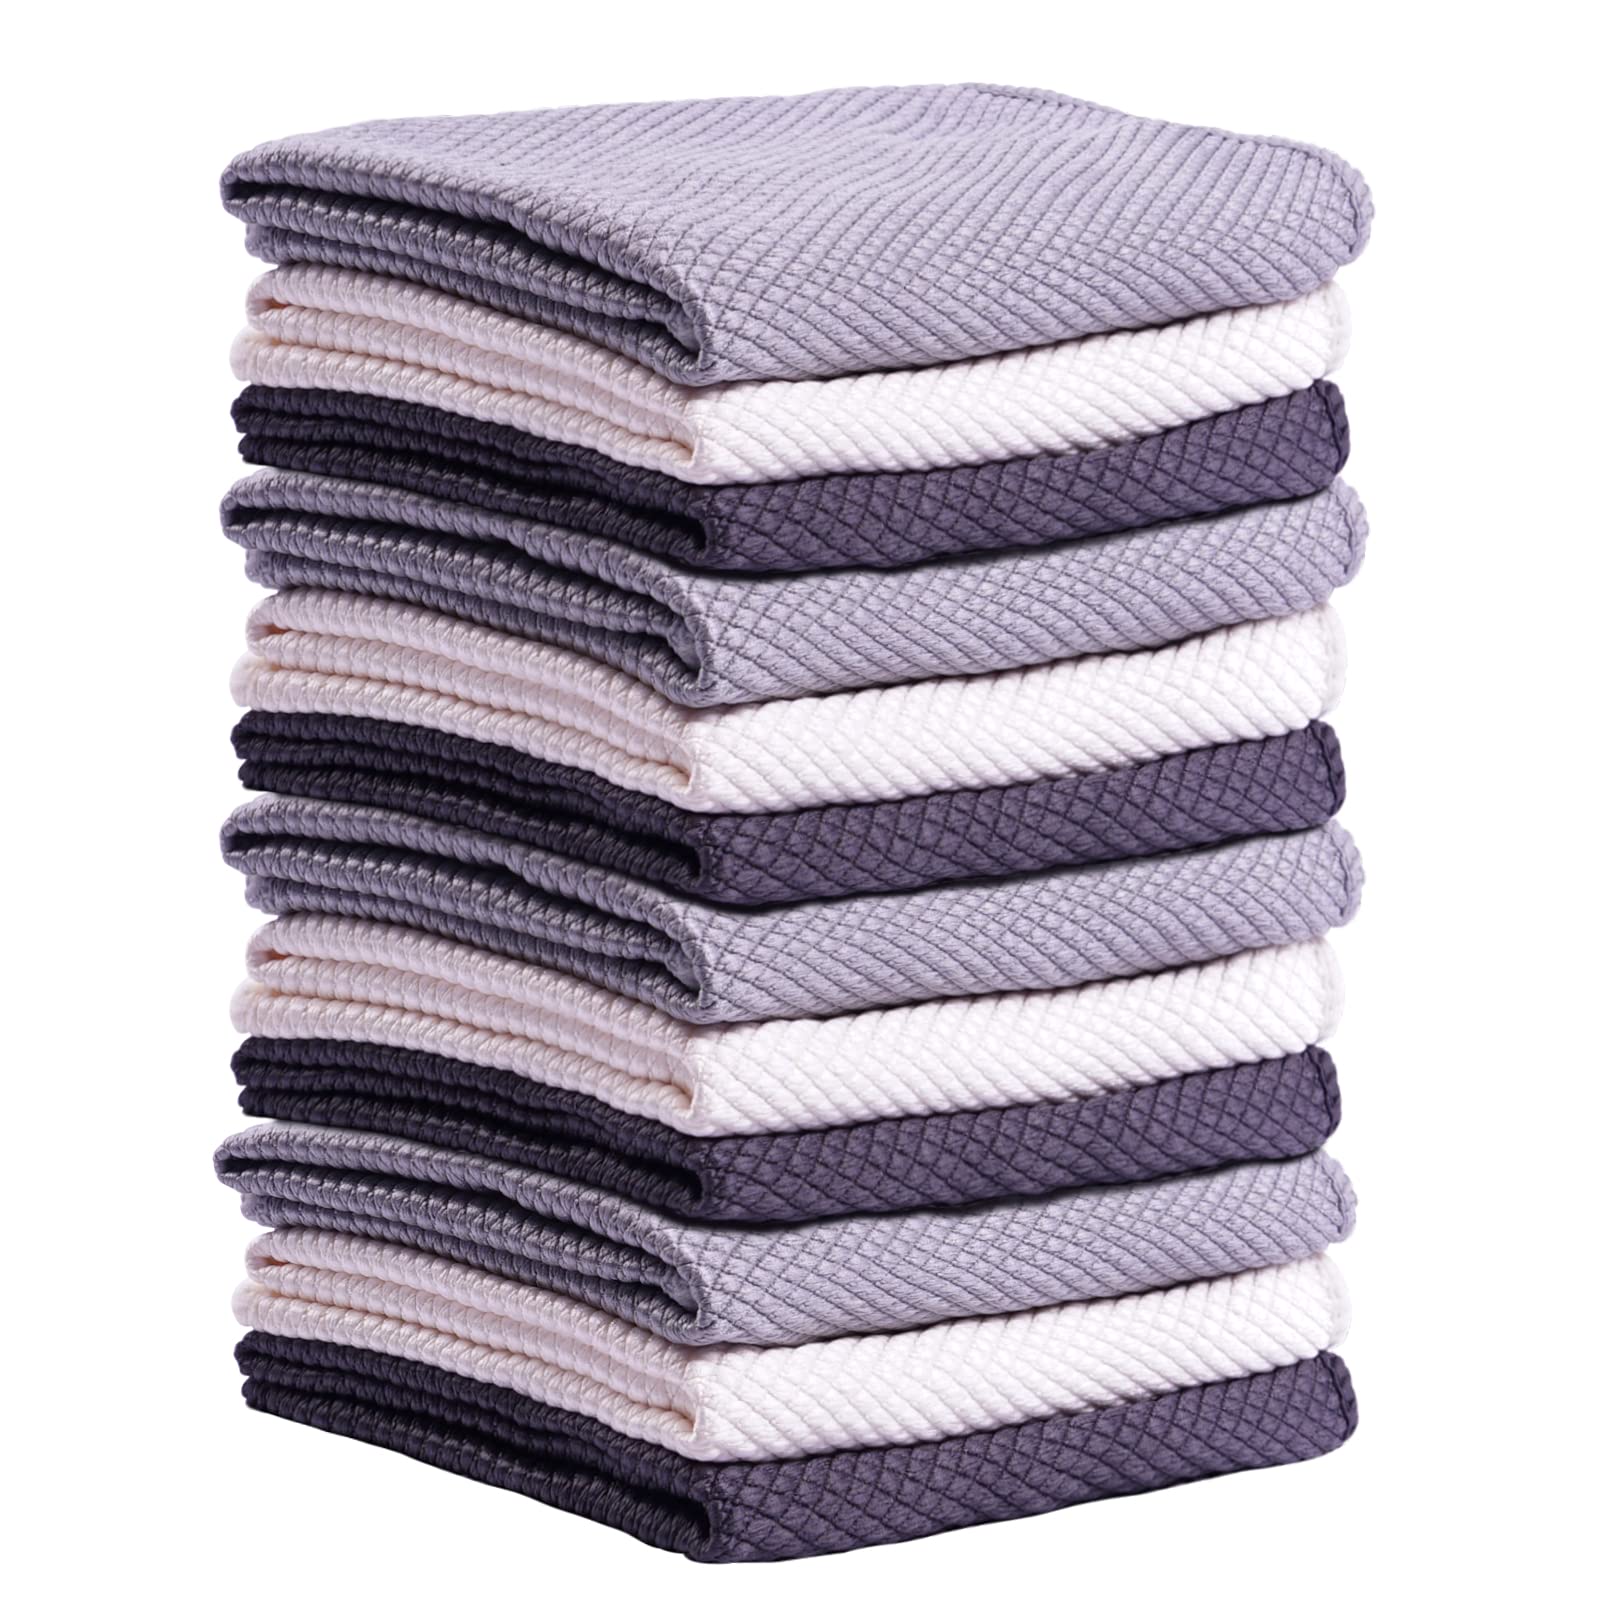 Viviland Microfiber Tea Towels Set of 12, 30 x 30 cm Ultra Soft Kitchen Towels Durable and Reusable Towel, Absorbent Quick Dry Tea Towels